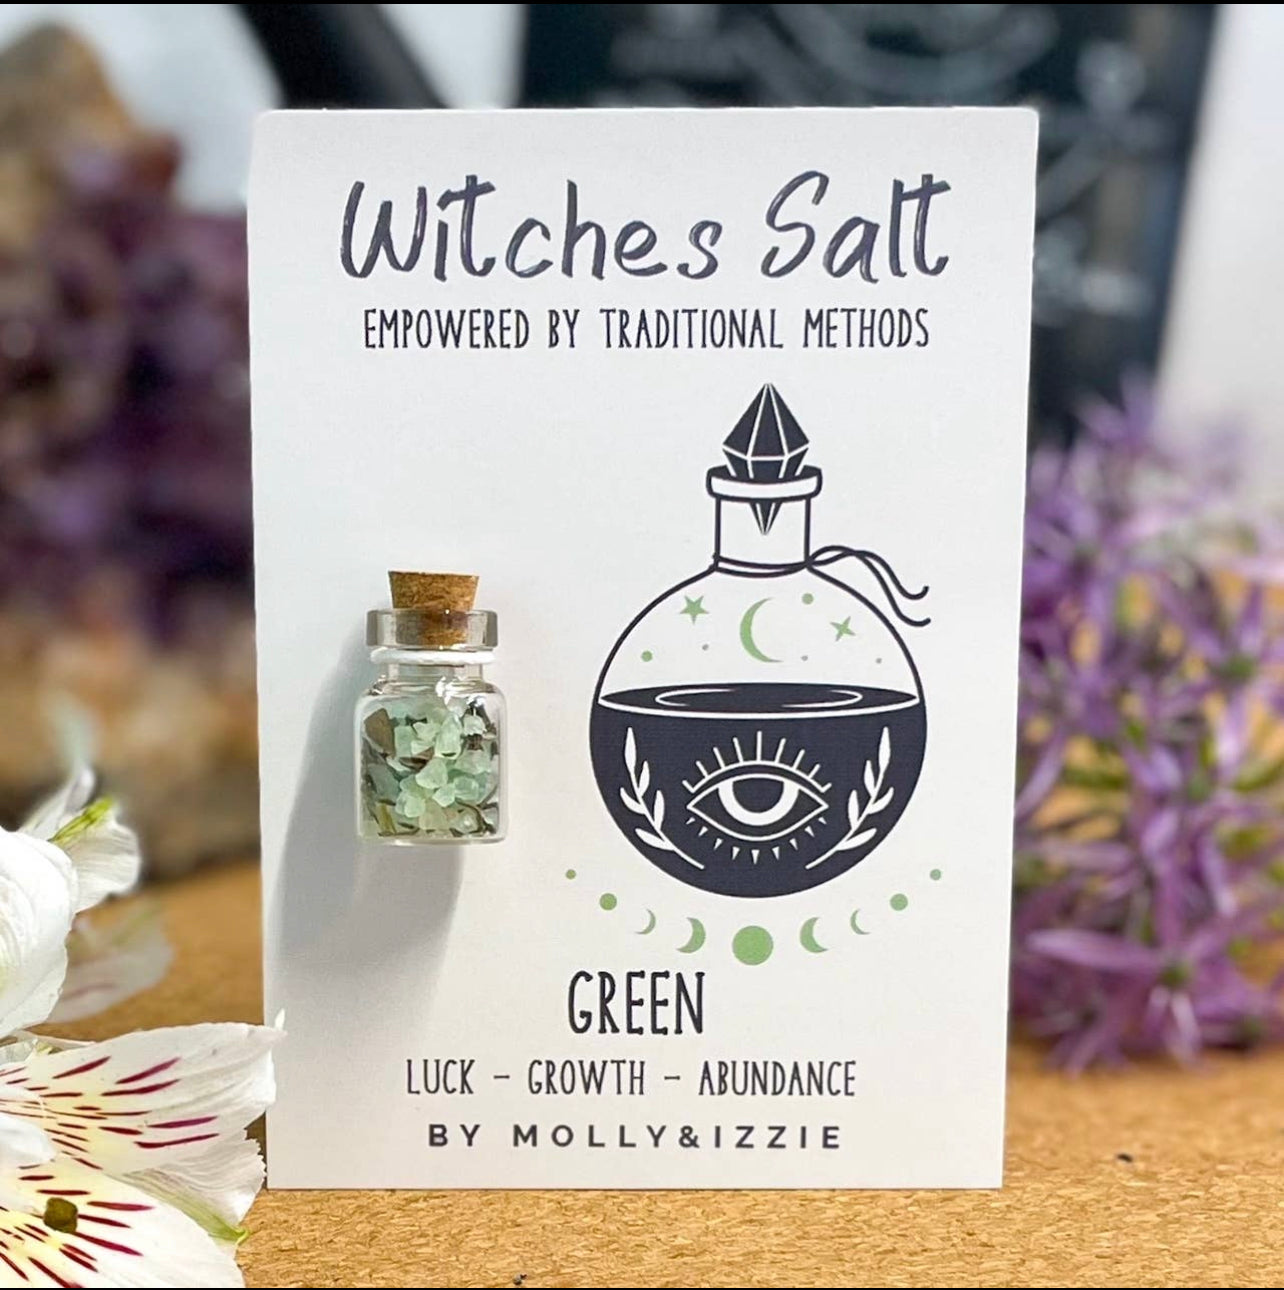 Witches Salt